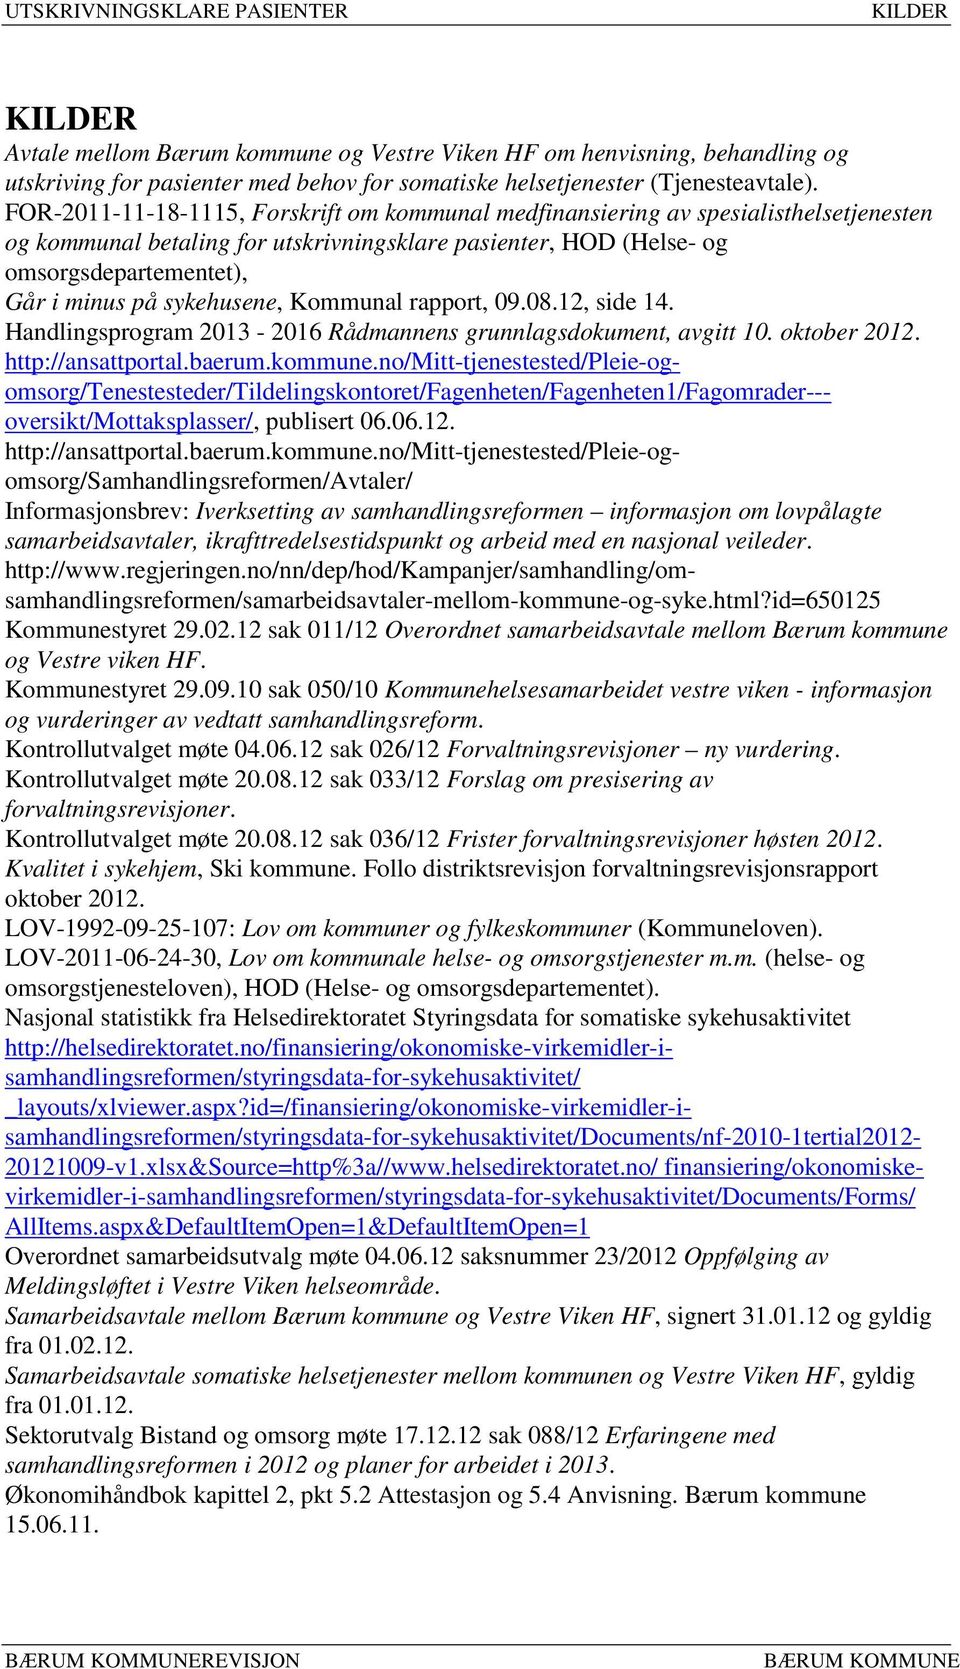 sykehusene, Kommunal rapport, 09.08.12, side 14. Handlingsprogram 2013-2016 Rådmannens grunnlagsdokument, avgitt 10. oktober 2012. http://ansattportal.baerum.kommune.